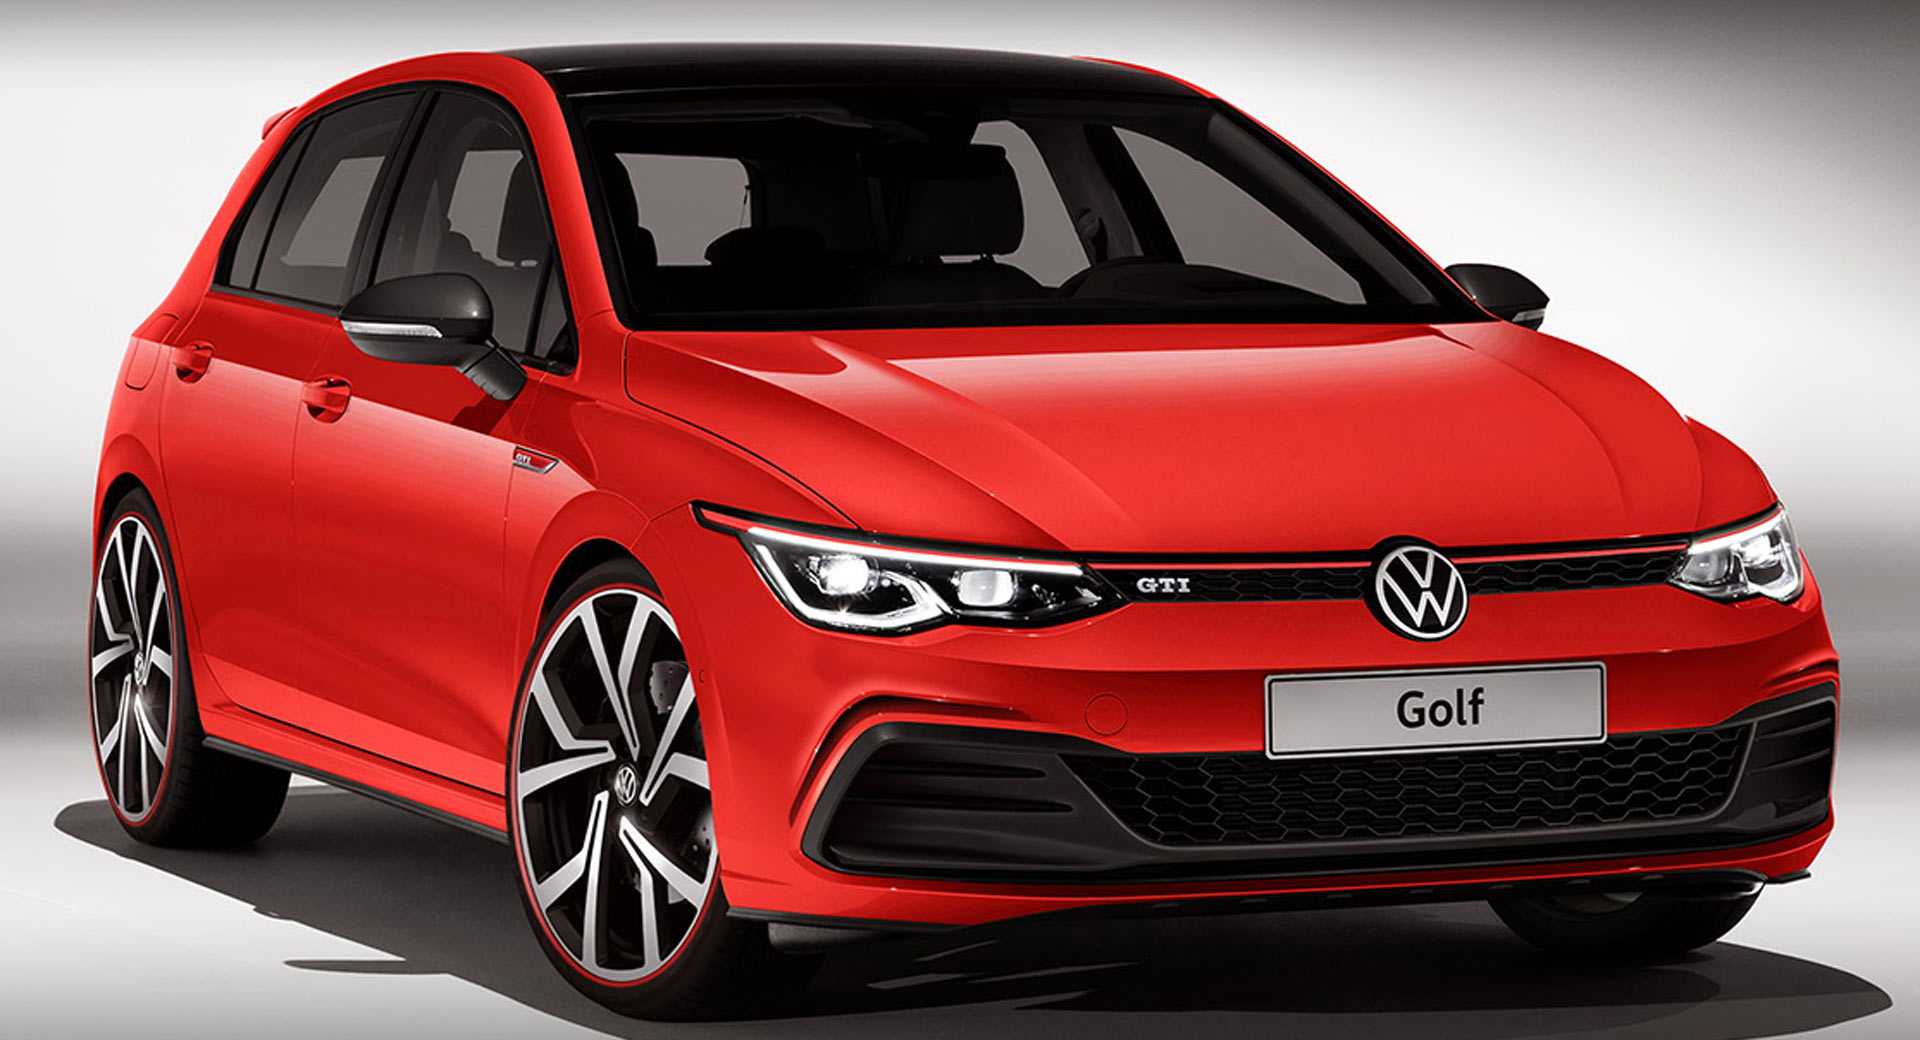 Volkswagen golf вернулся в россию после двухлетнего перерыва, а легендарный "жук" покинет конвейер в следующем году - «автоновости» » авто - новости